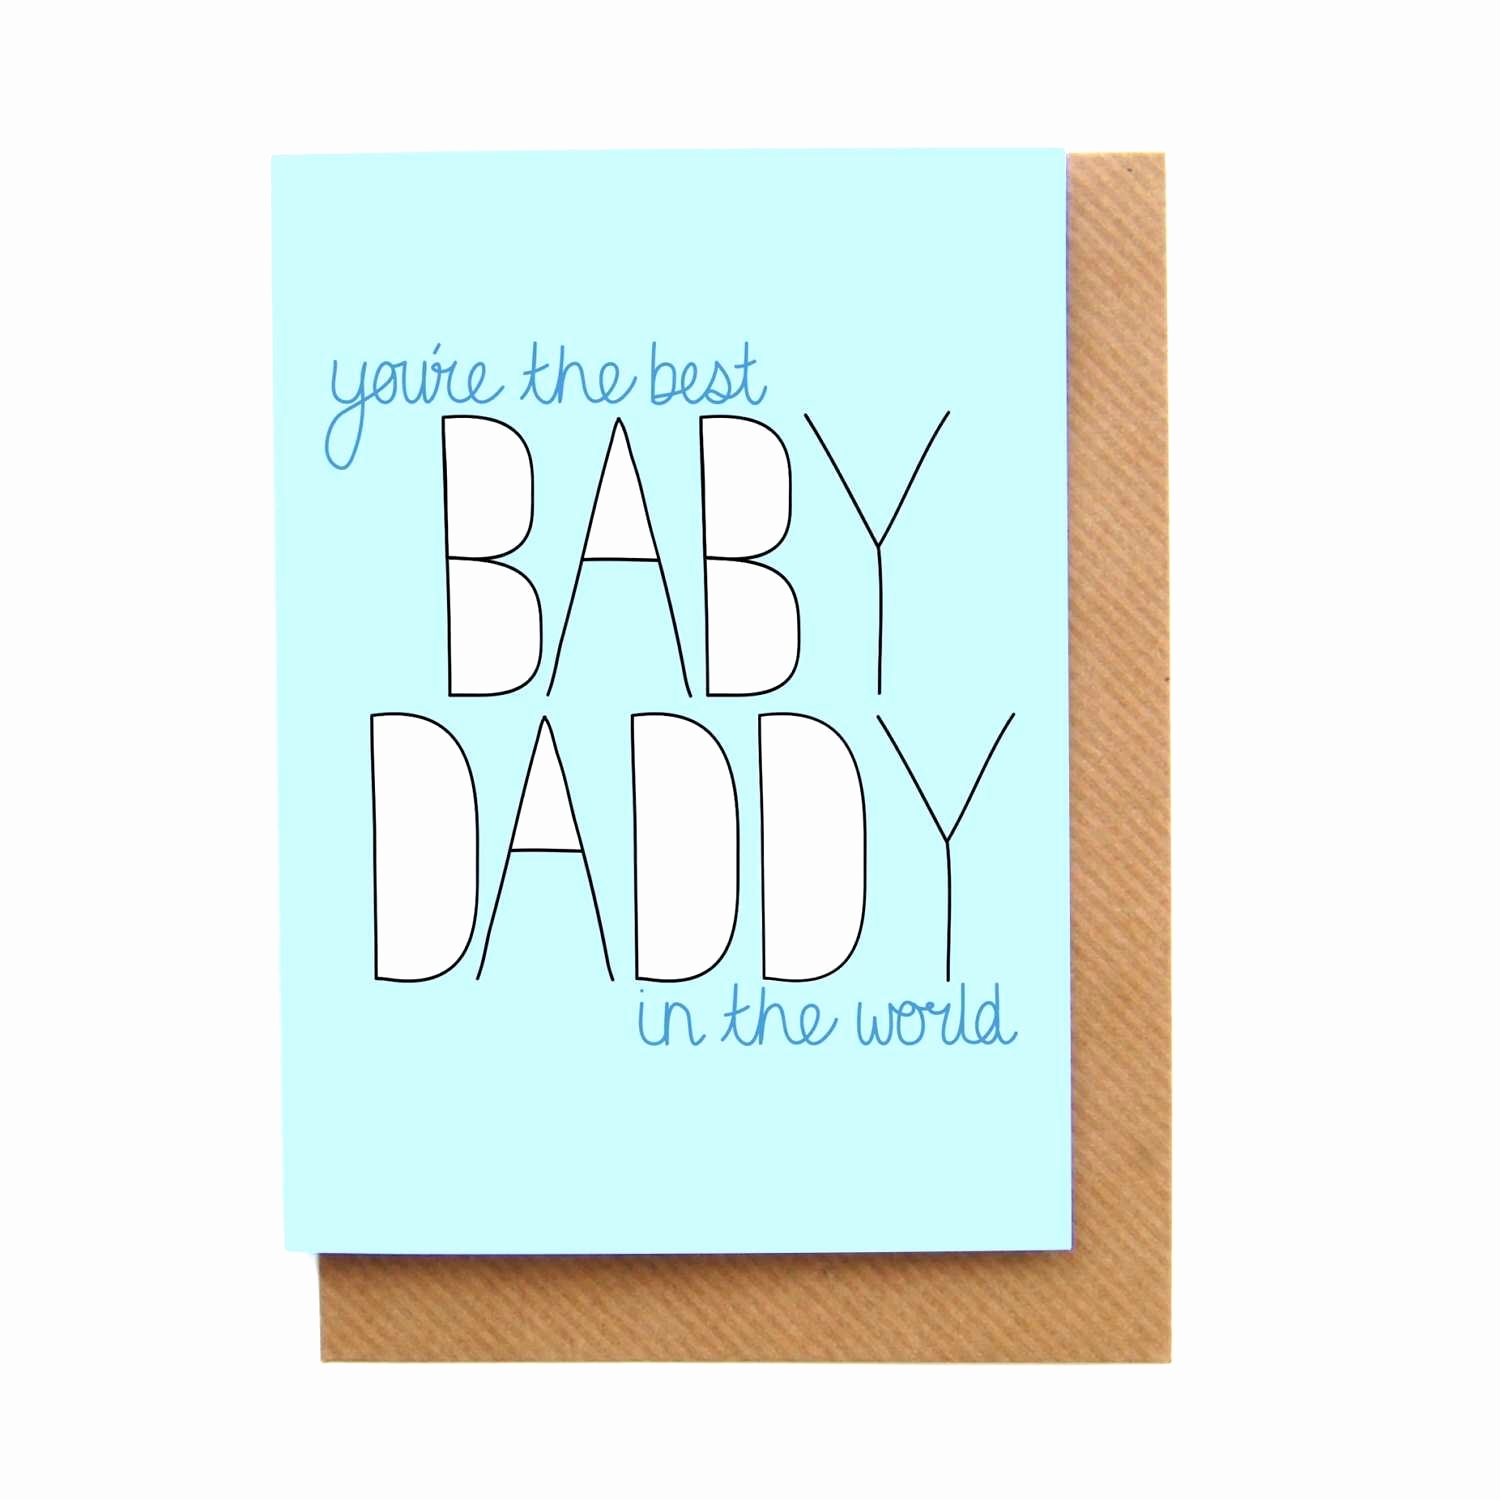 Card Ideas For Dads Birthday Happy Birthday Dad Card Ideas Best Of Dad Birthday Card Ideas